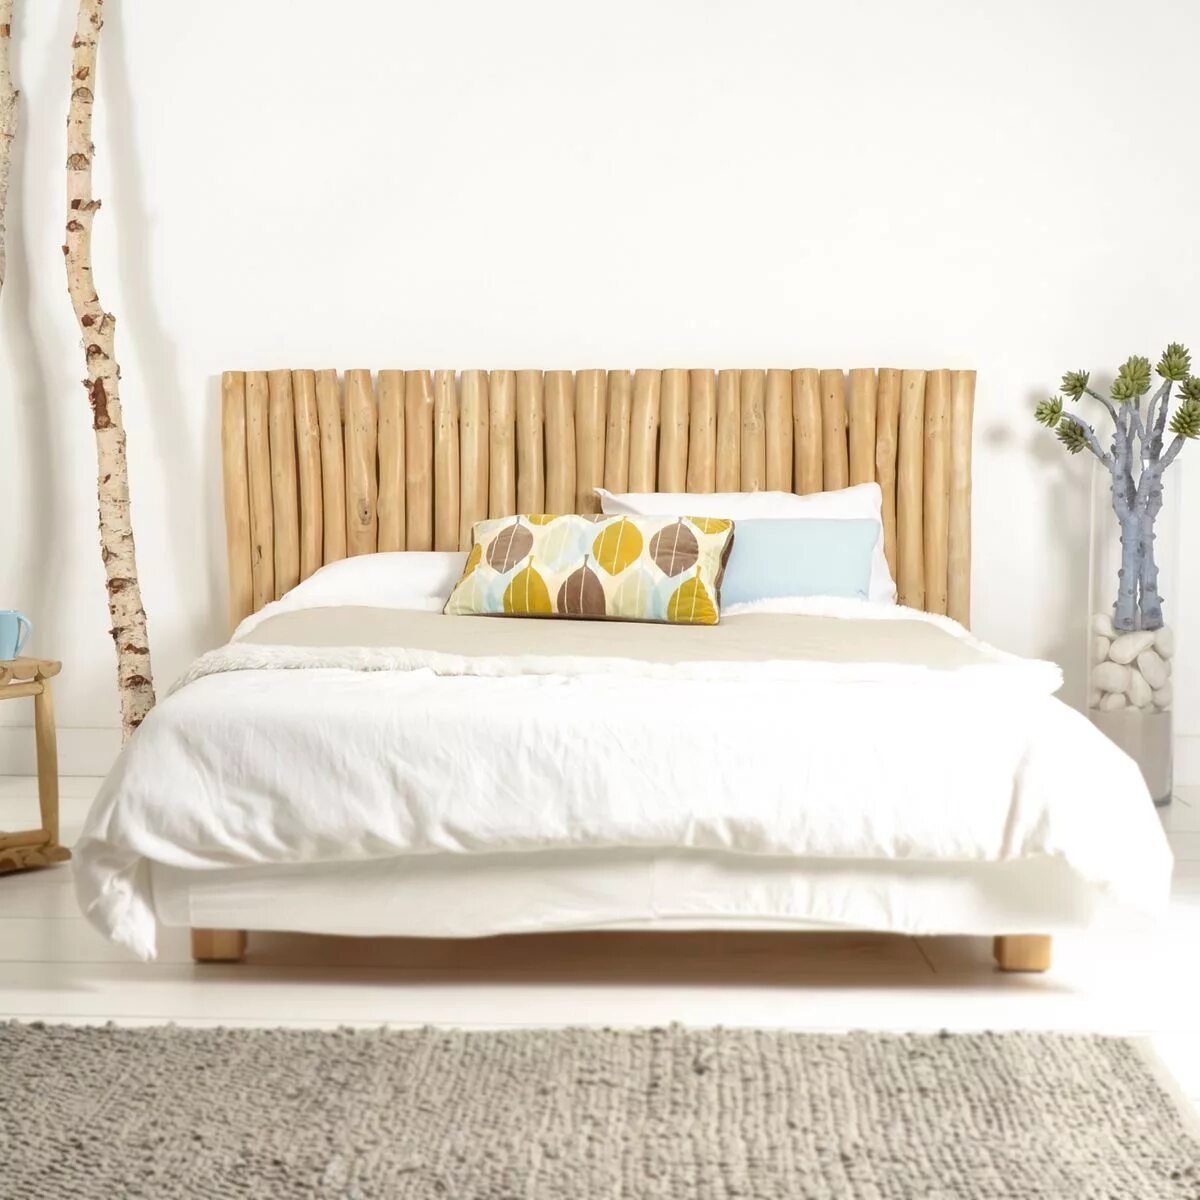 Изголовье кровати из дерева. Необычное изголовье кровати. Кровать в эко стиле. Спинка кровати дерево.